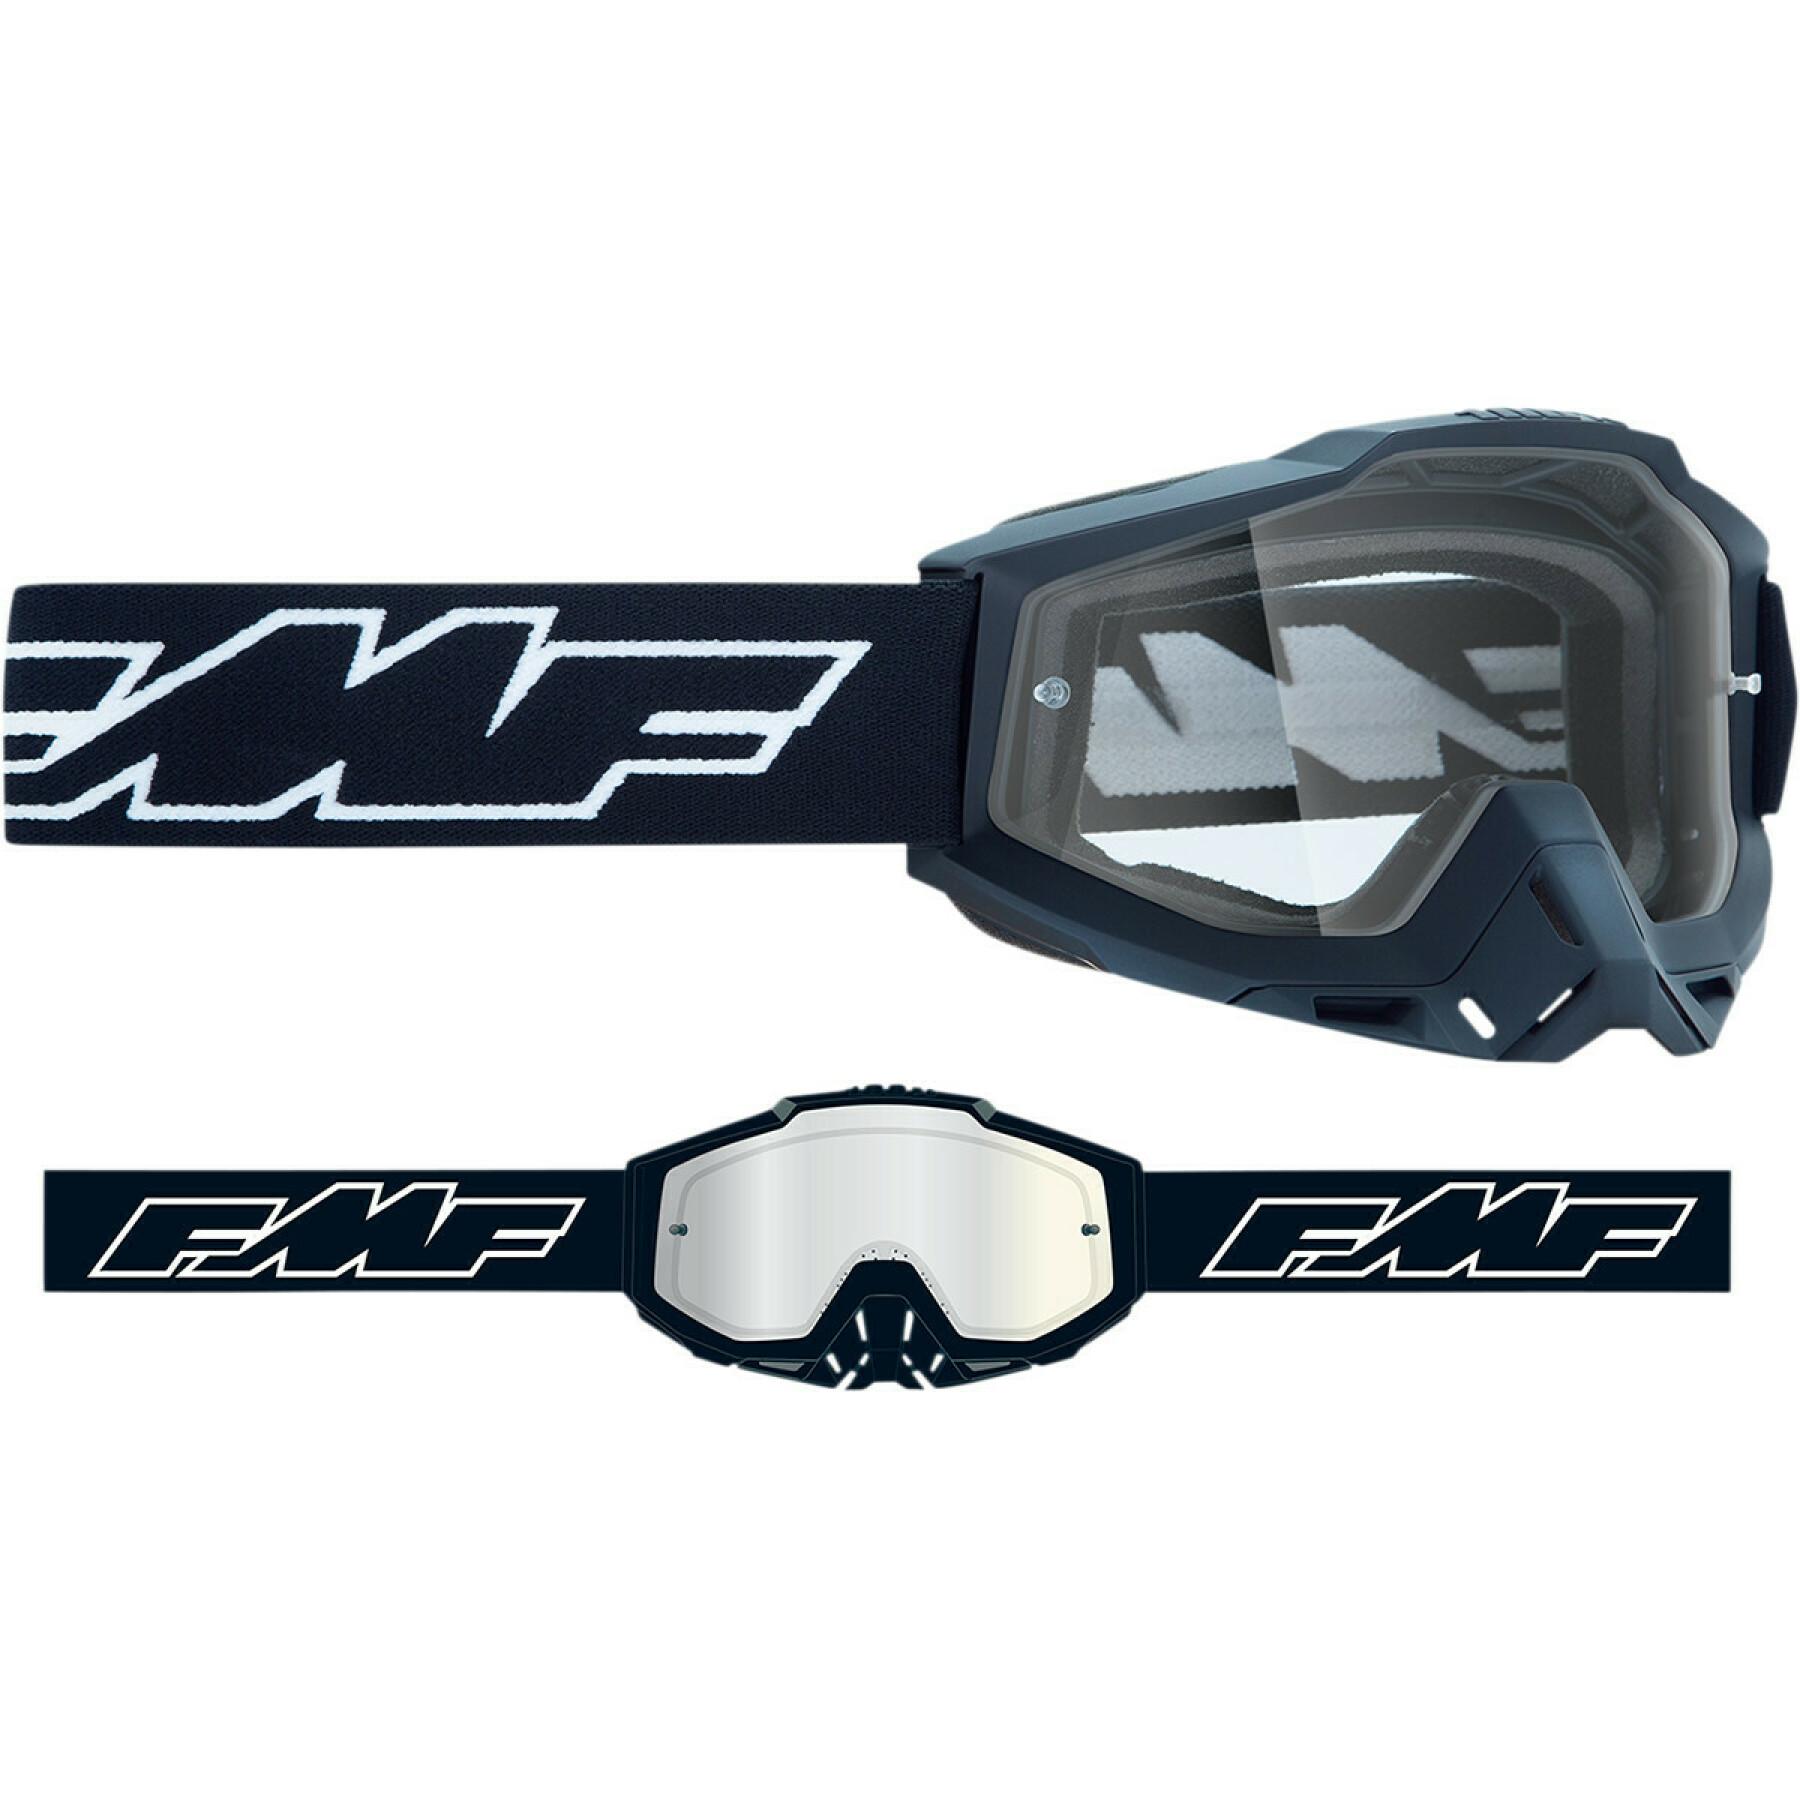 Motorrad-Crossbrille FMF Vision otg rocket